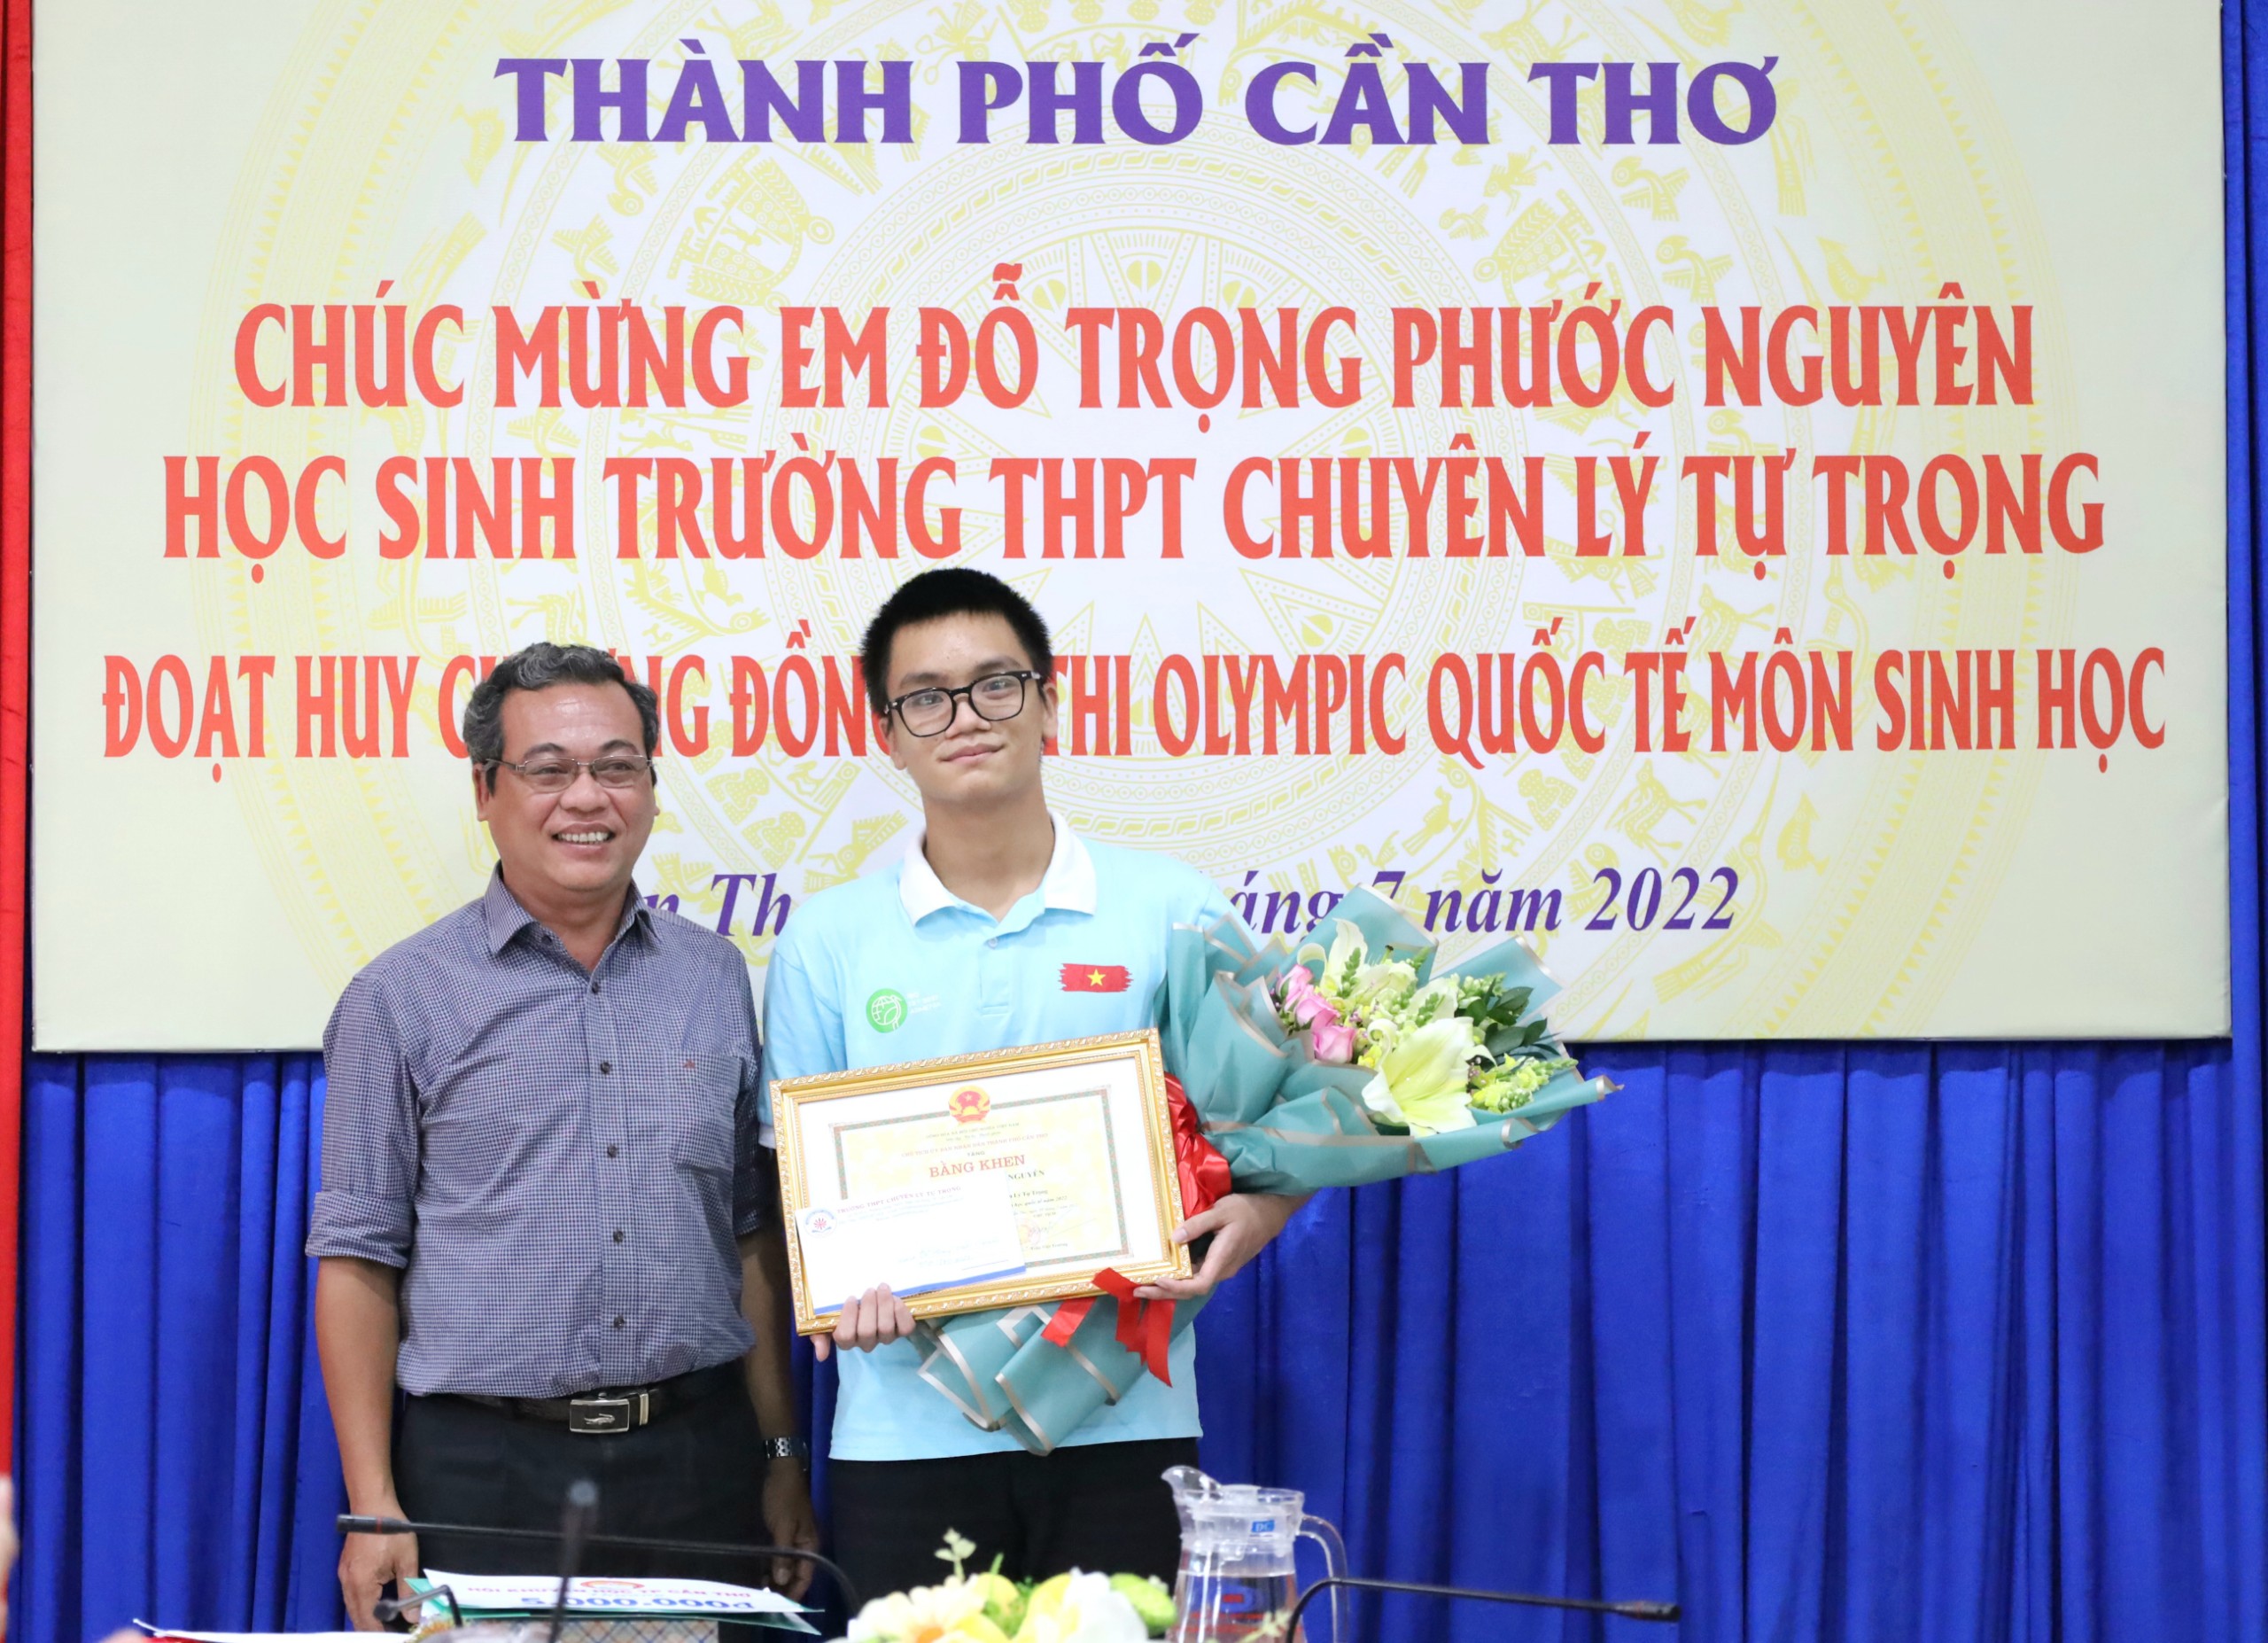 Ông Bùi Duy Minh Trí - Hiệu trưởng trường THPT chuyên Lý Tự Trọng trao thưởng cho em Đỗ Trọng Phước Nguyên.